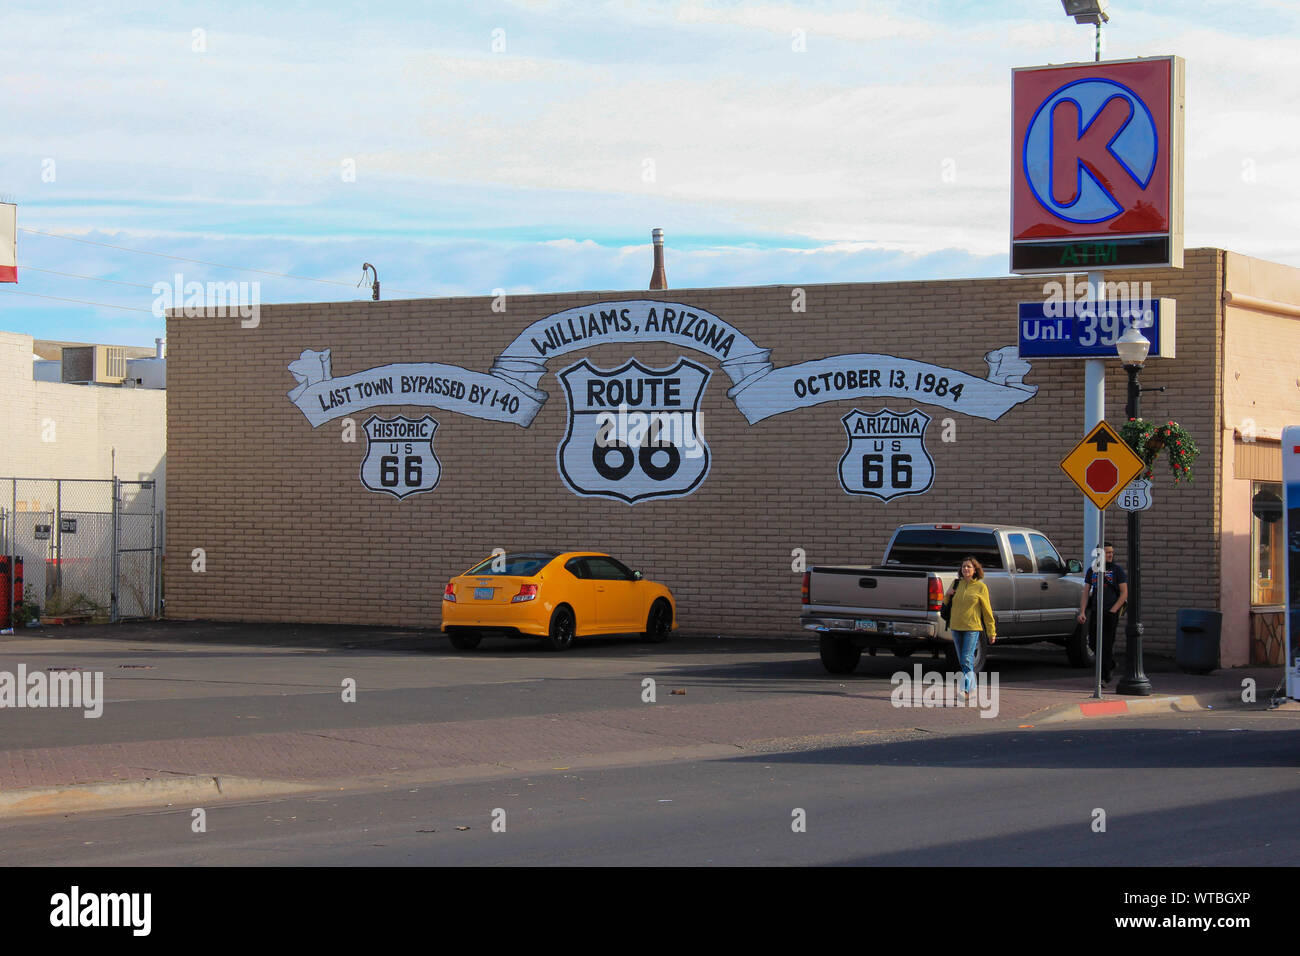 Williams, Arizona / STATI UNITI D'America - 06 Ottobre 2012: Vista della Route 66 simbolo su una parete di un edificio Foto Stock